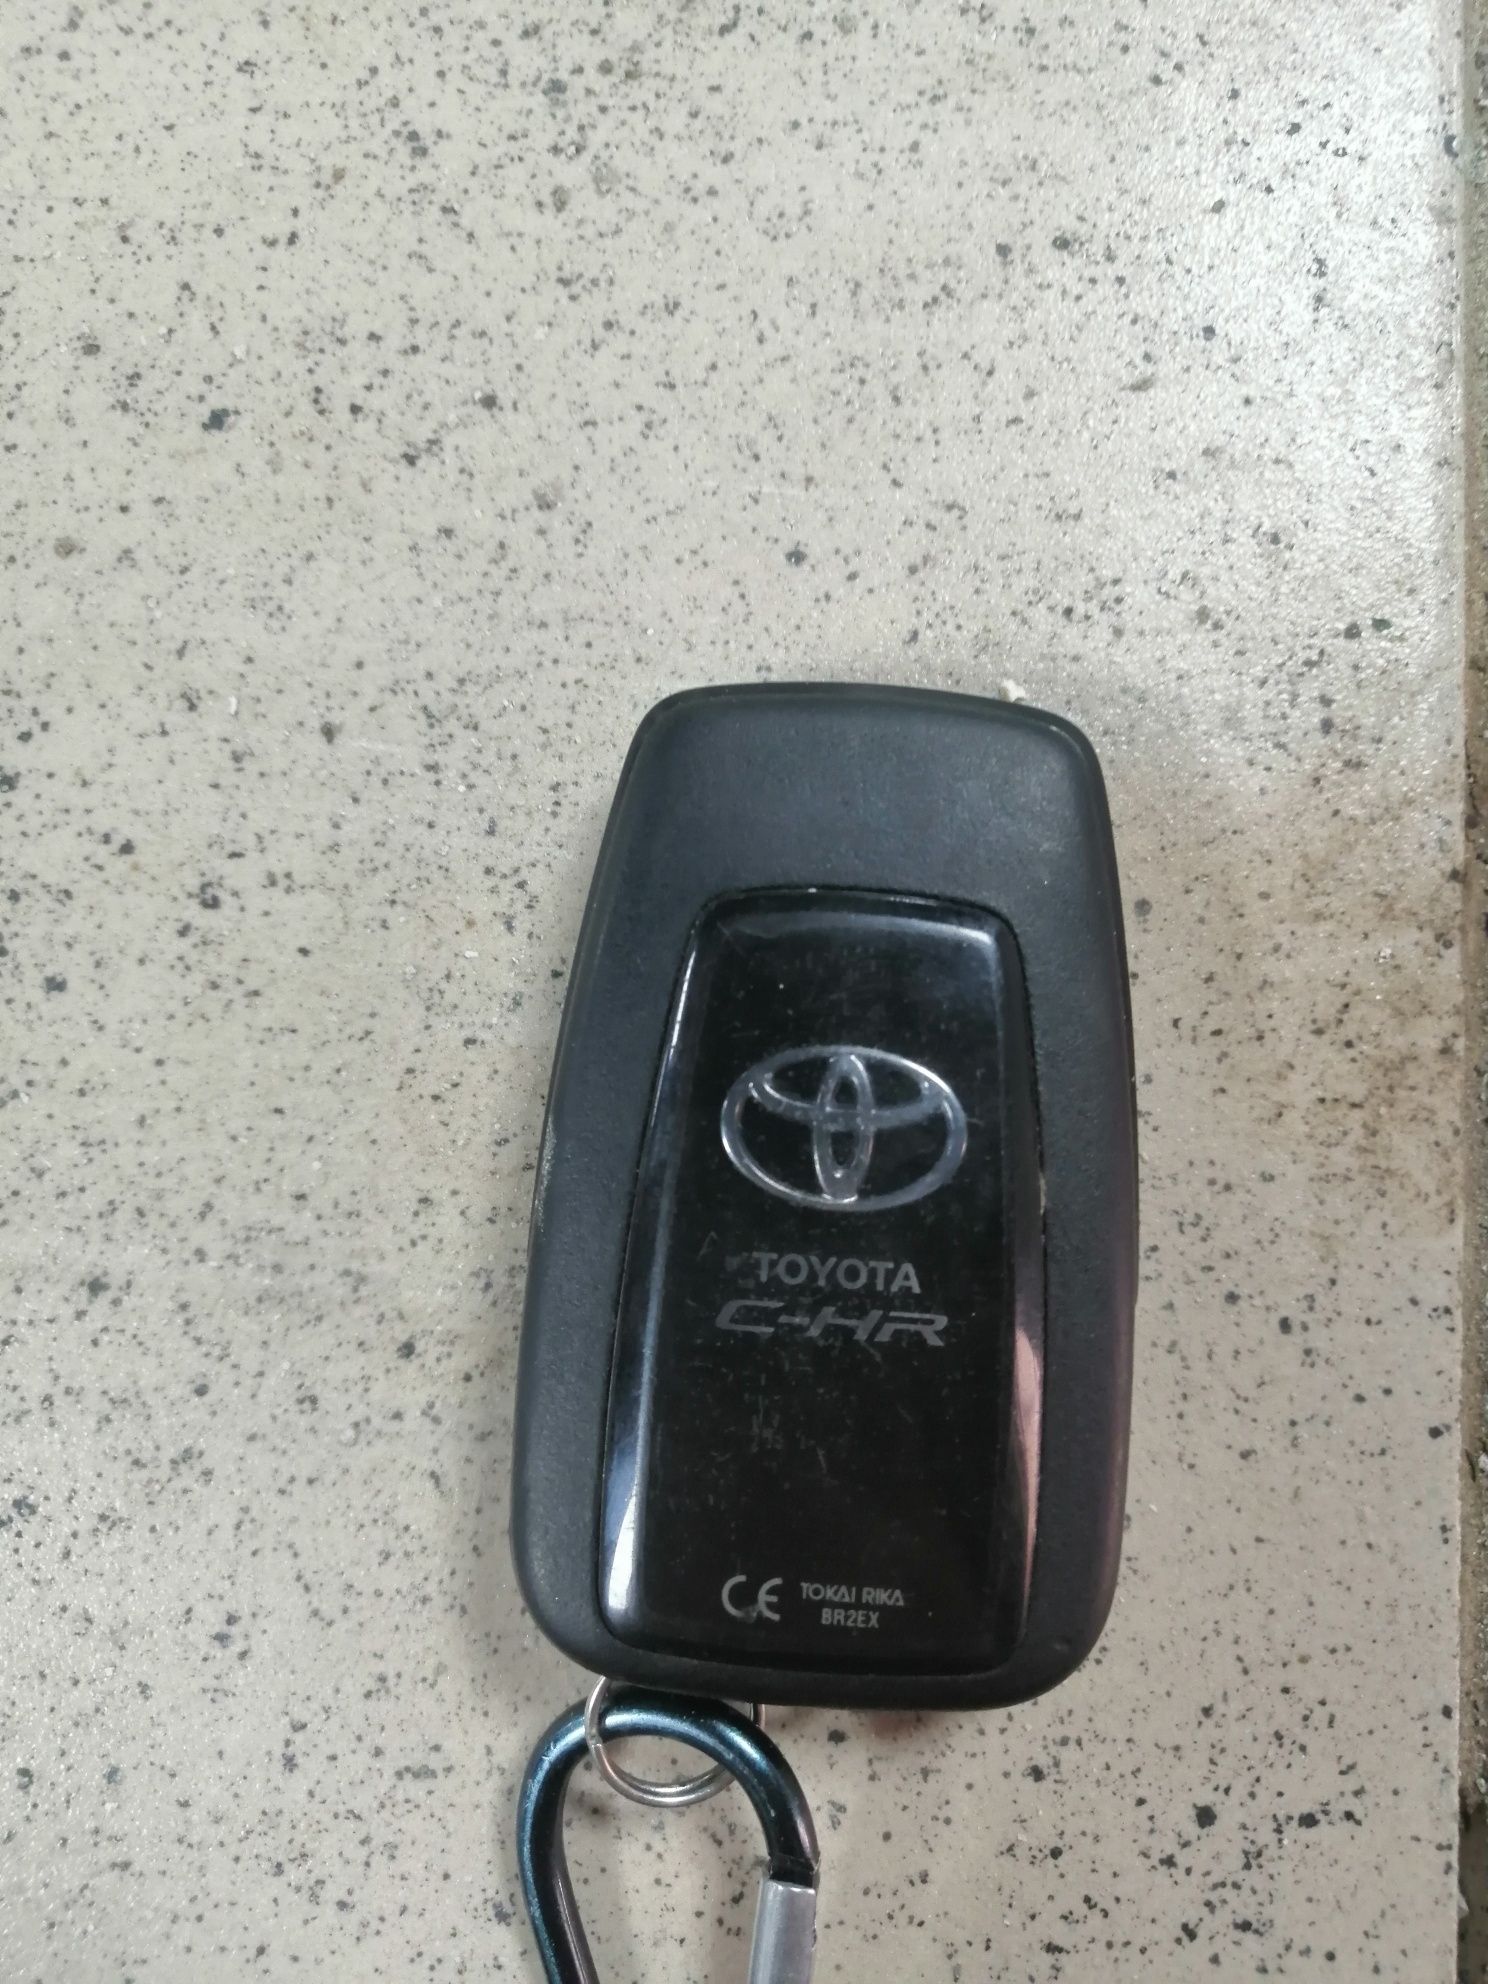 Ключ зажигания Toyota C-HR BR2EX електроный